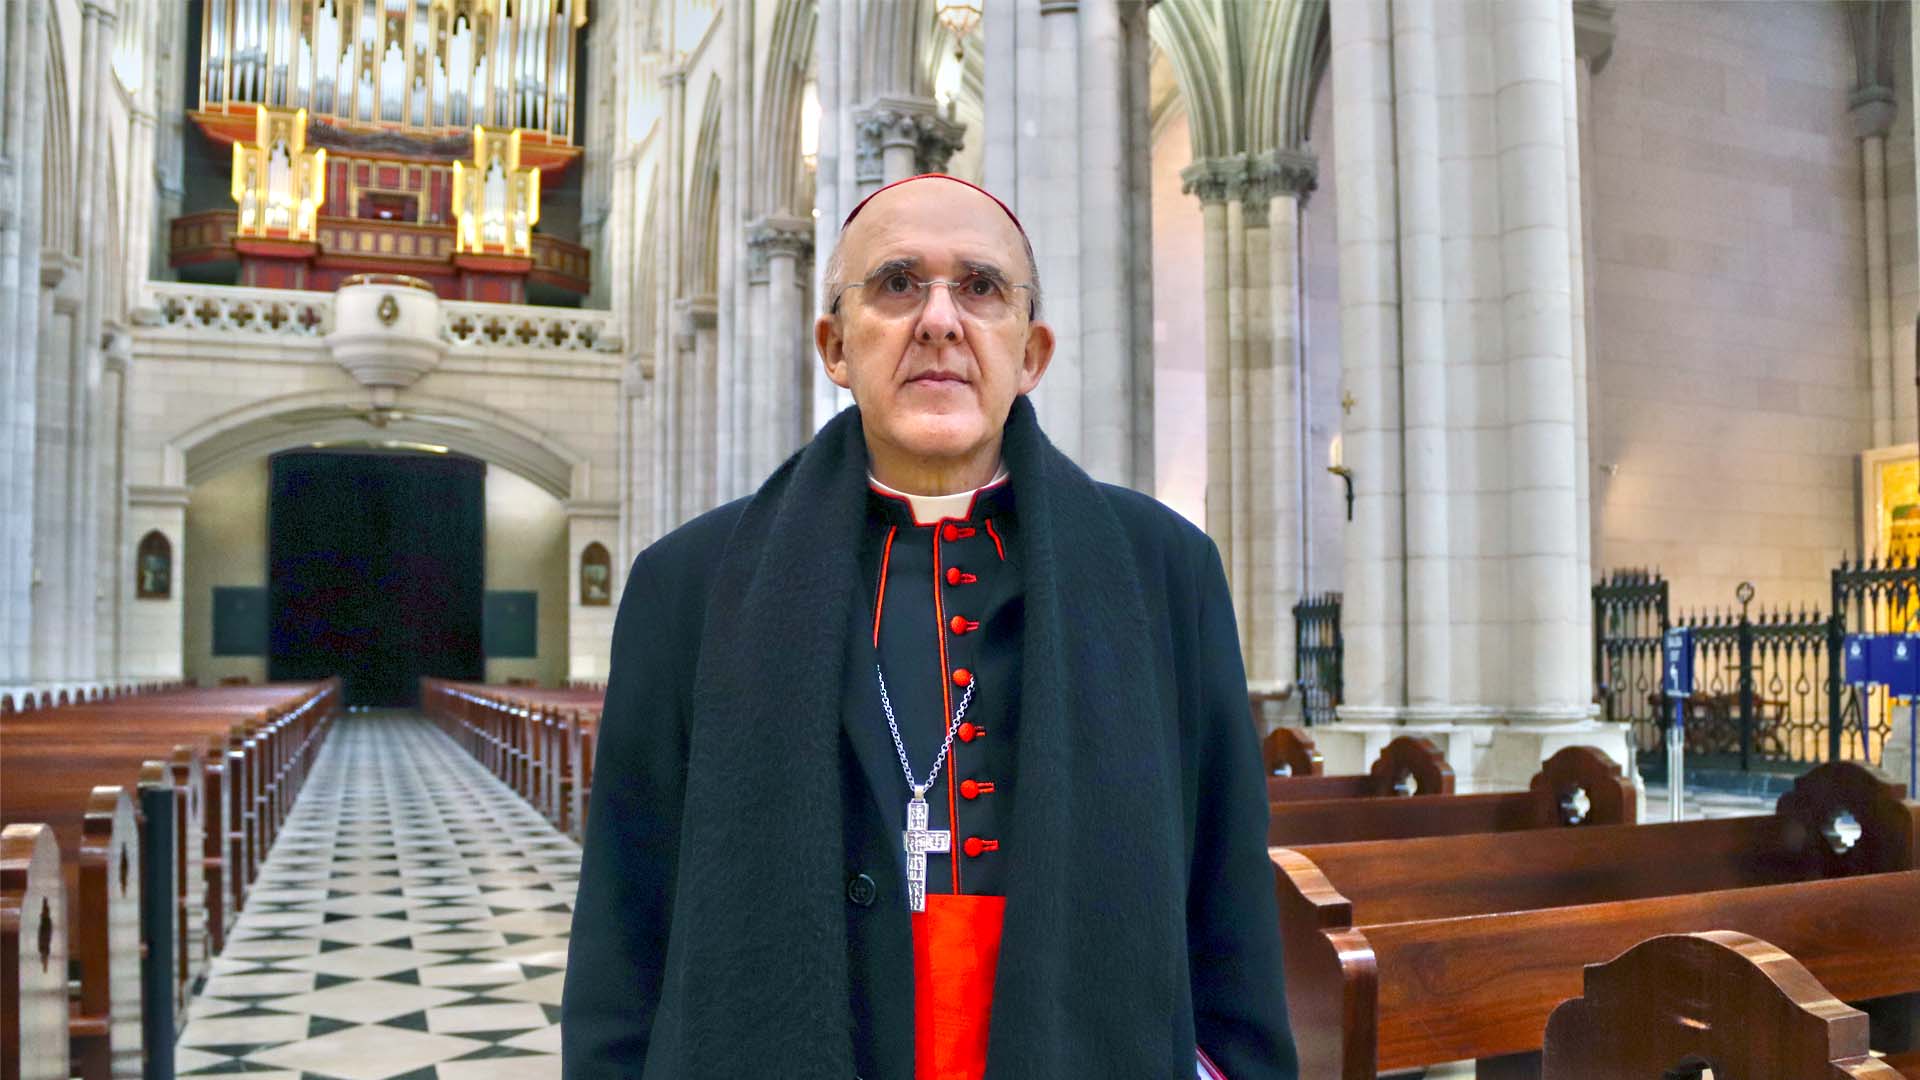 El cardenal Osoro pide «perdón públicamente» por los abusos sexuales de miembros de la Iglesia en España